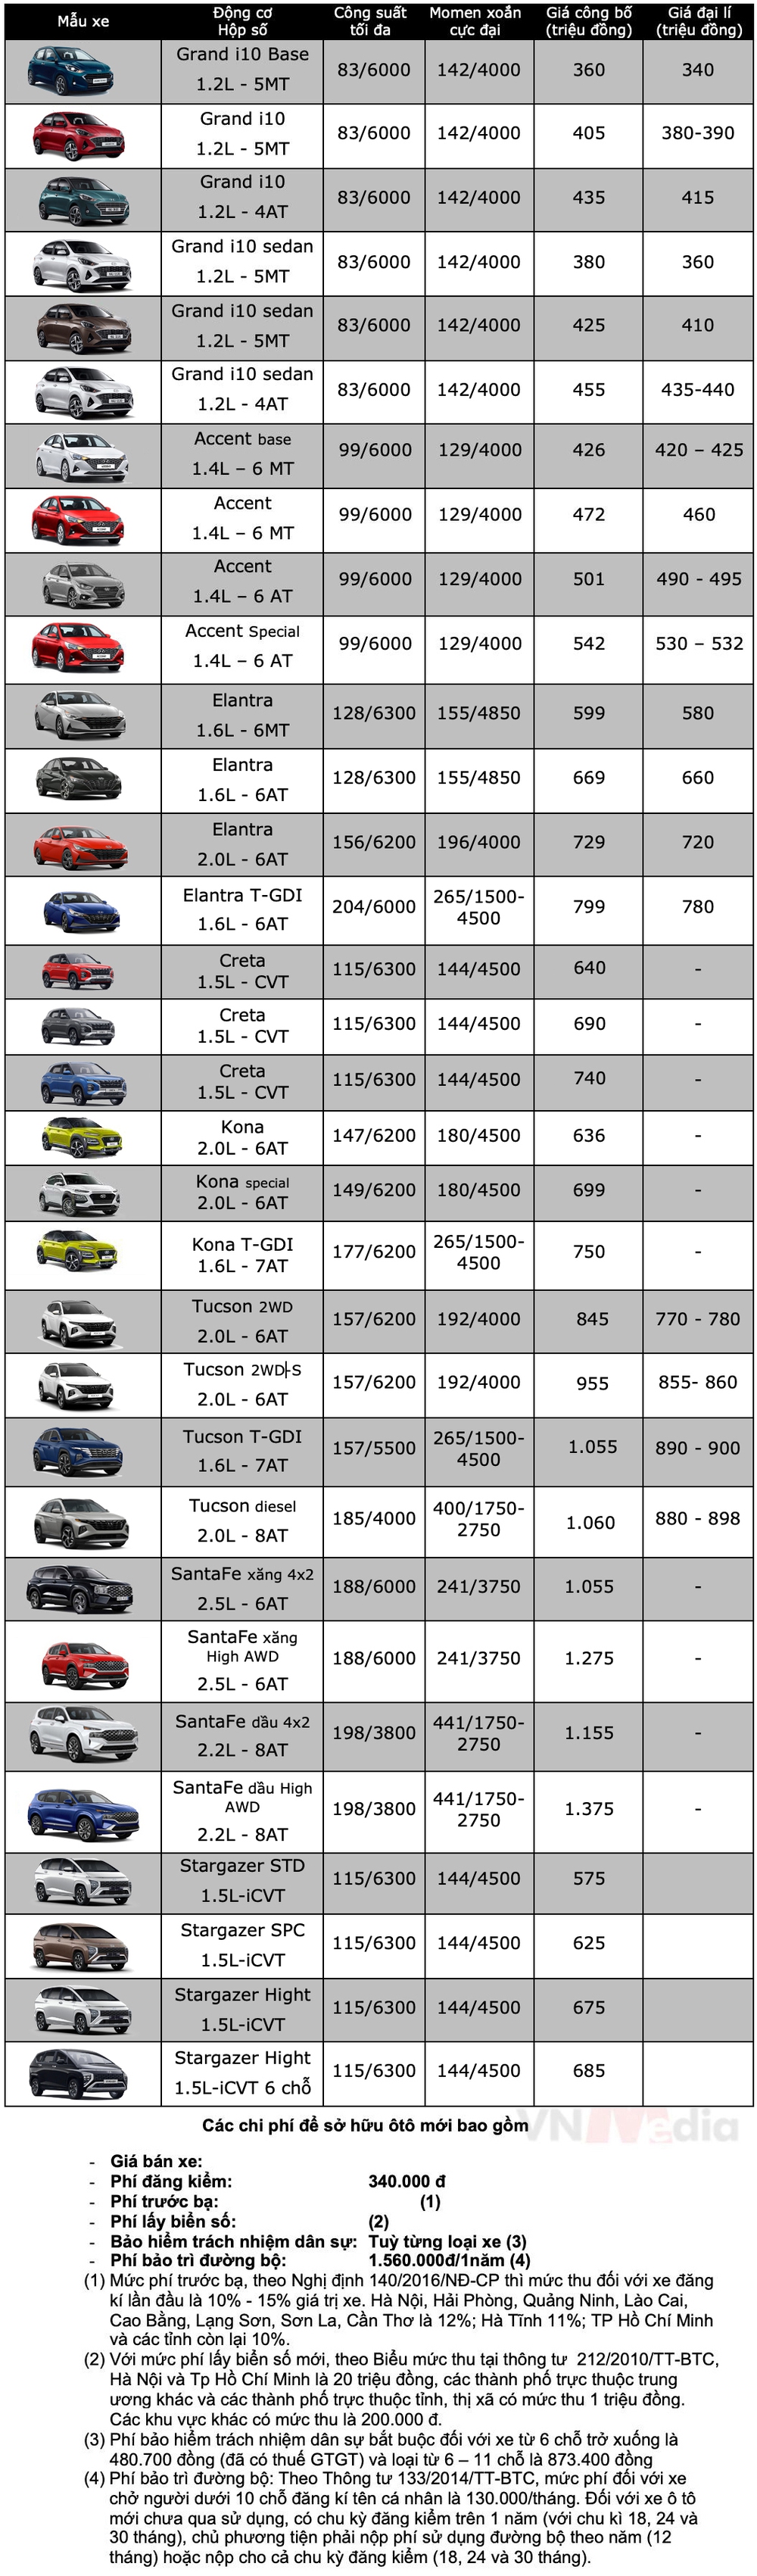 Bảng giá xe Hyundai tháng 2: Hyundai Elantra được giảm 45 triệu đồng - Ảnh 2.